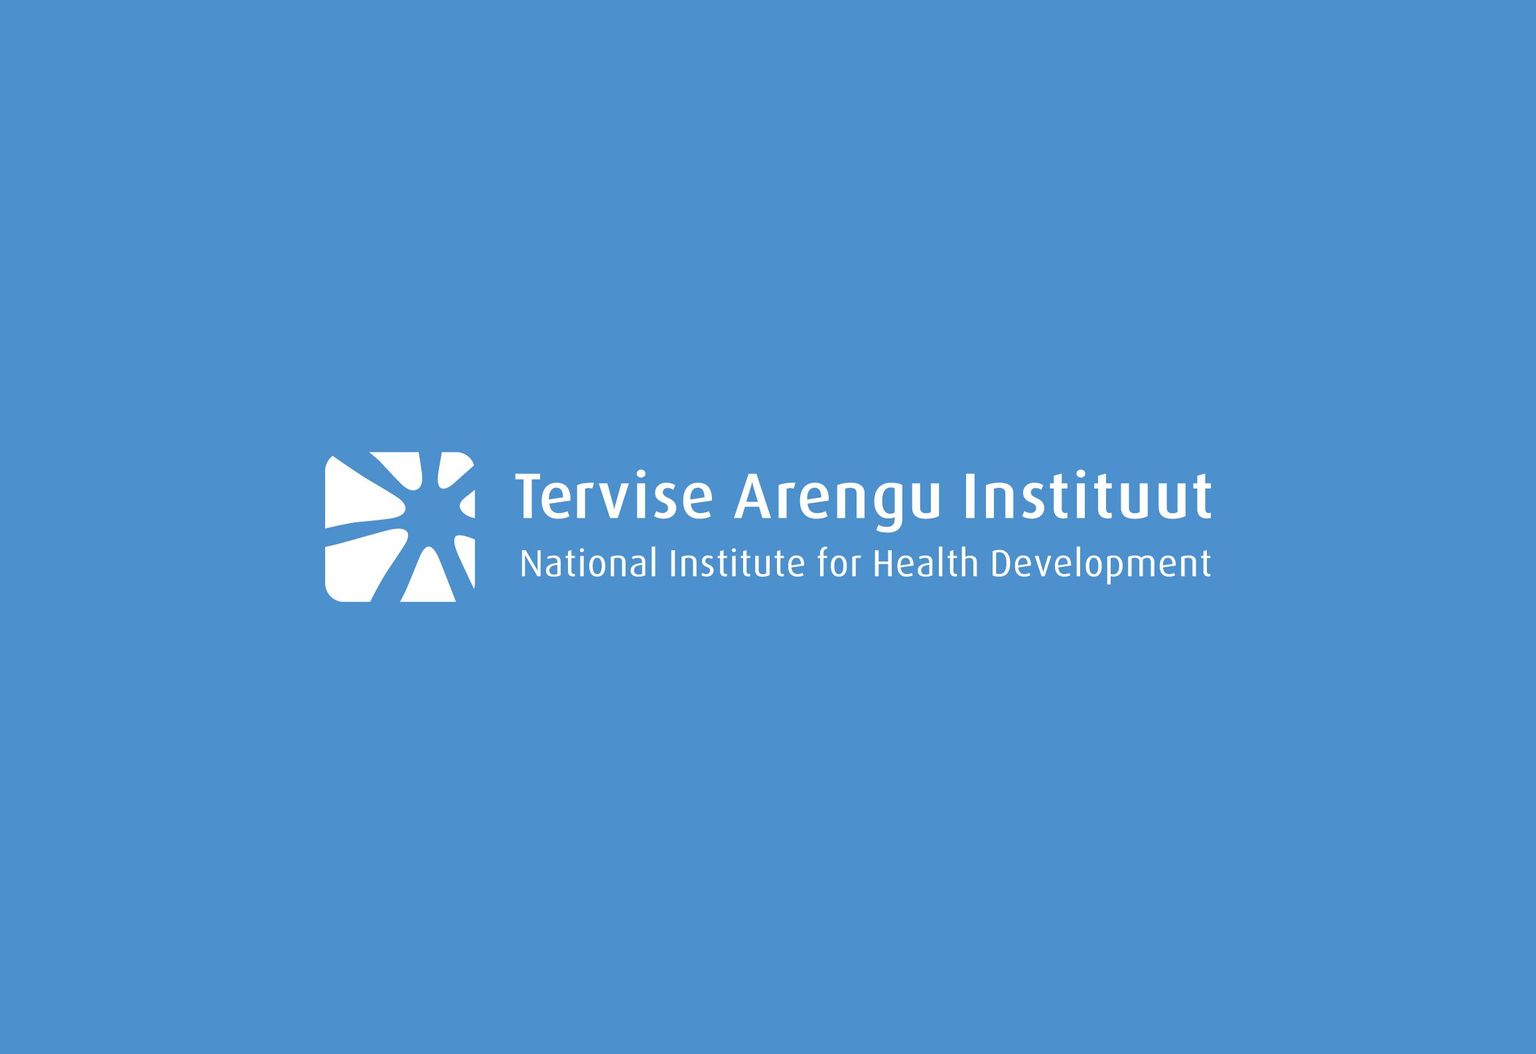 Tervise Arengu Instituudi logo.